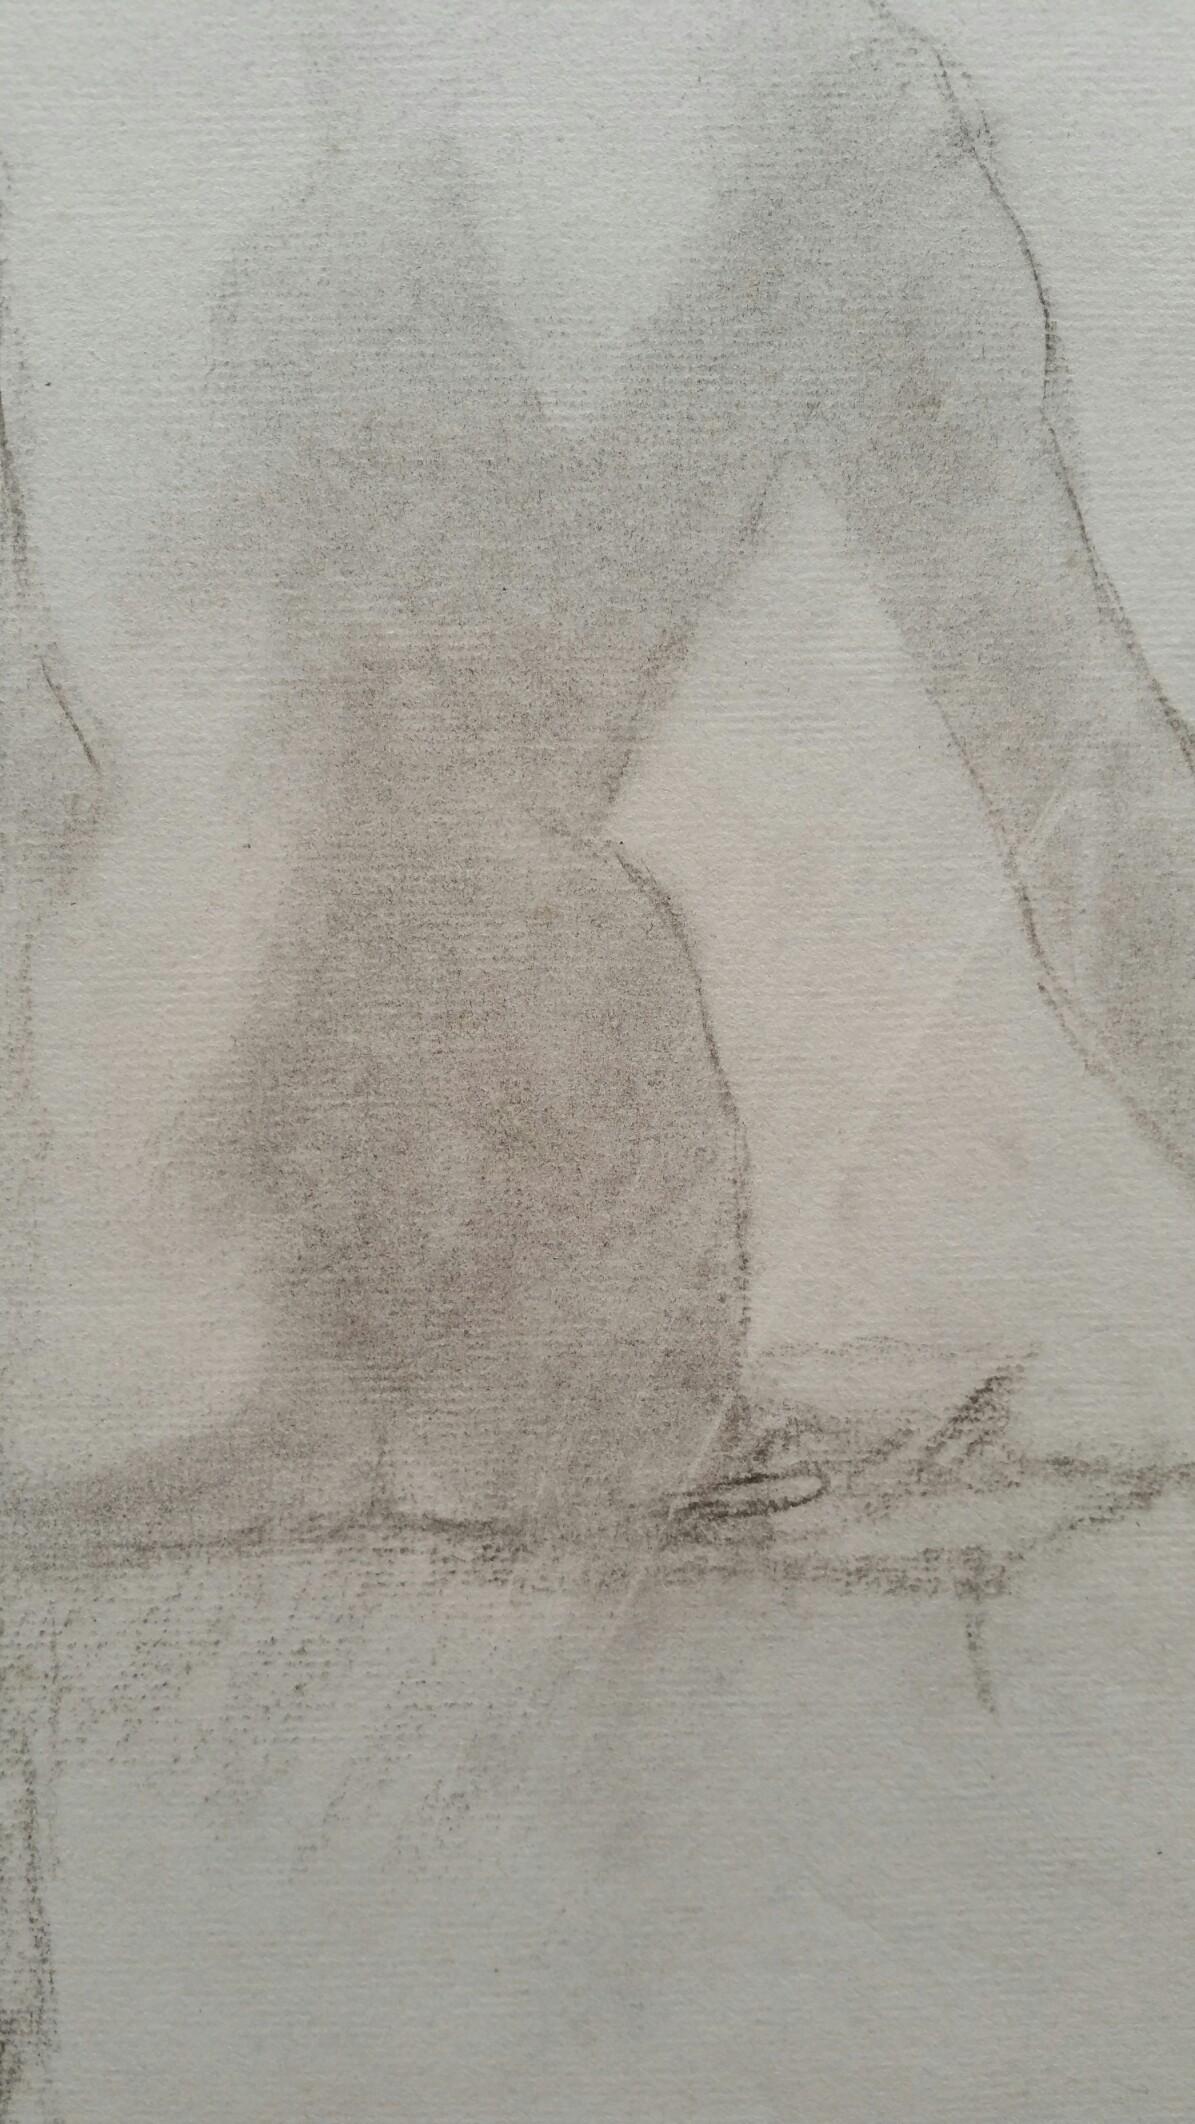 Esquisse en graphite d'une femme nue, vue de dos, assise
par Henry George Moon (britannique, 1857-1905)
sur papier d'artiste blanc cassé, non encadré
mesures : feuille 18.75 x 12 pouces 

provenance : de la succession de l'artiste

Rapport de